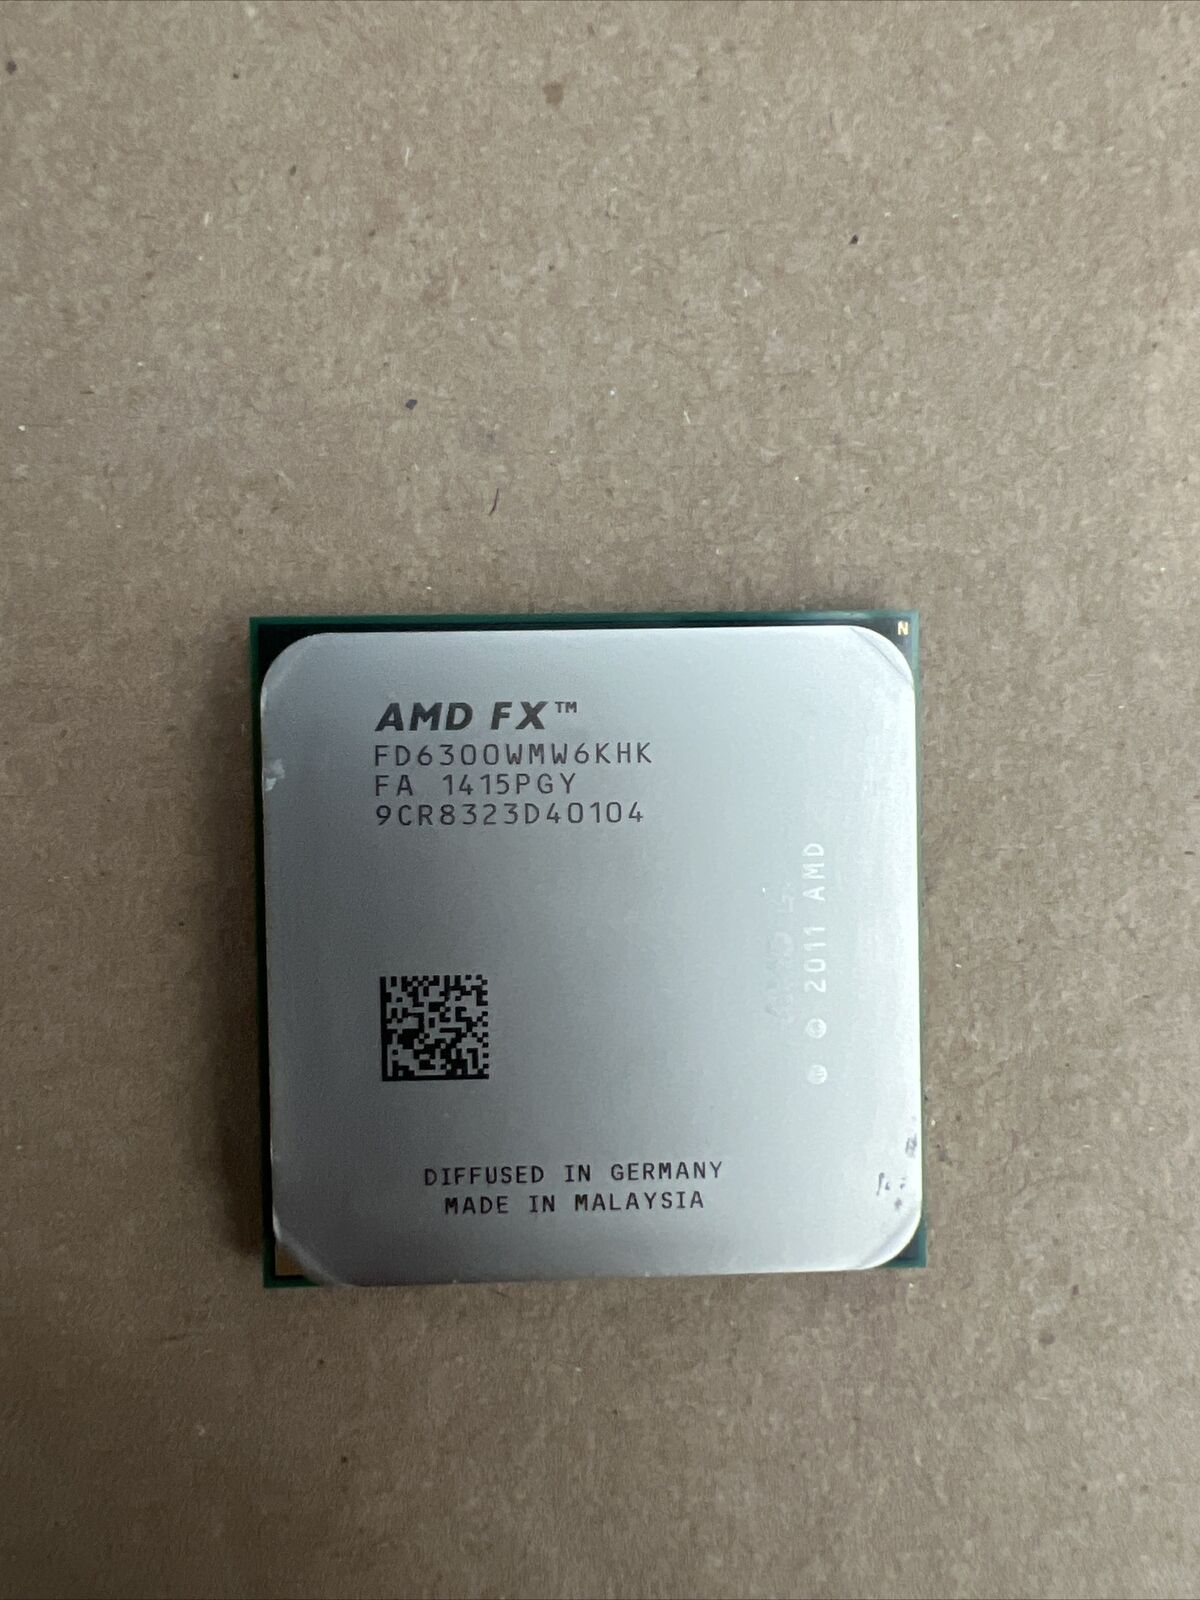 AMD FX-6300 3.5GHz SIX-Core Socket AM3+  CPU - FD6300WMW6KHK